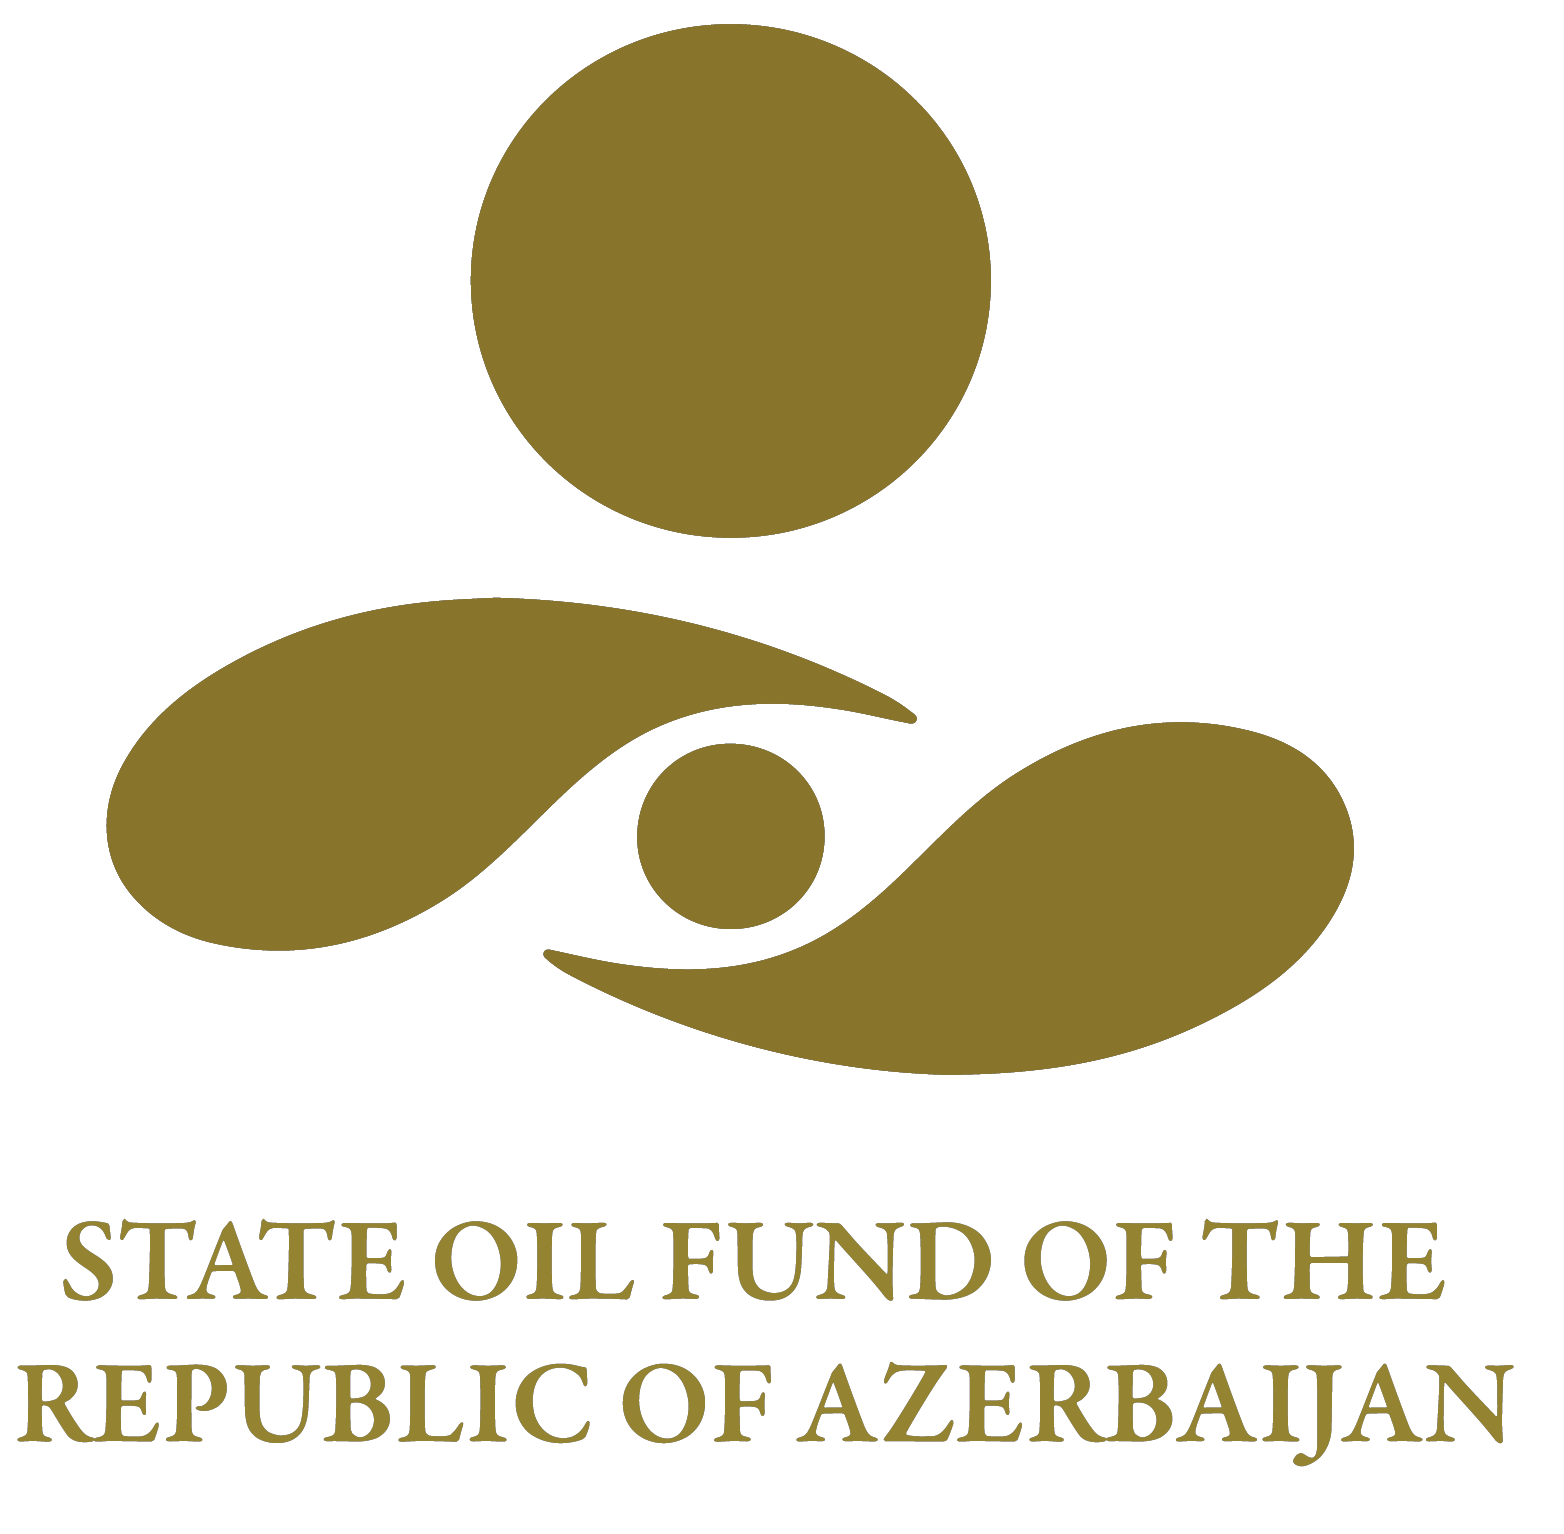 The State Oil Fund of the Republic of Azerbaijan VMware Eğitimi